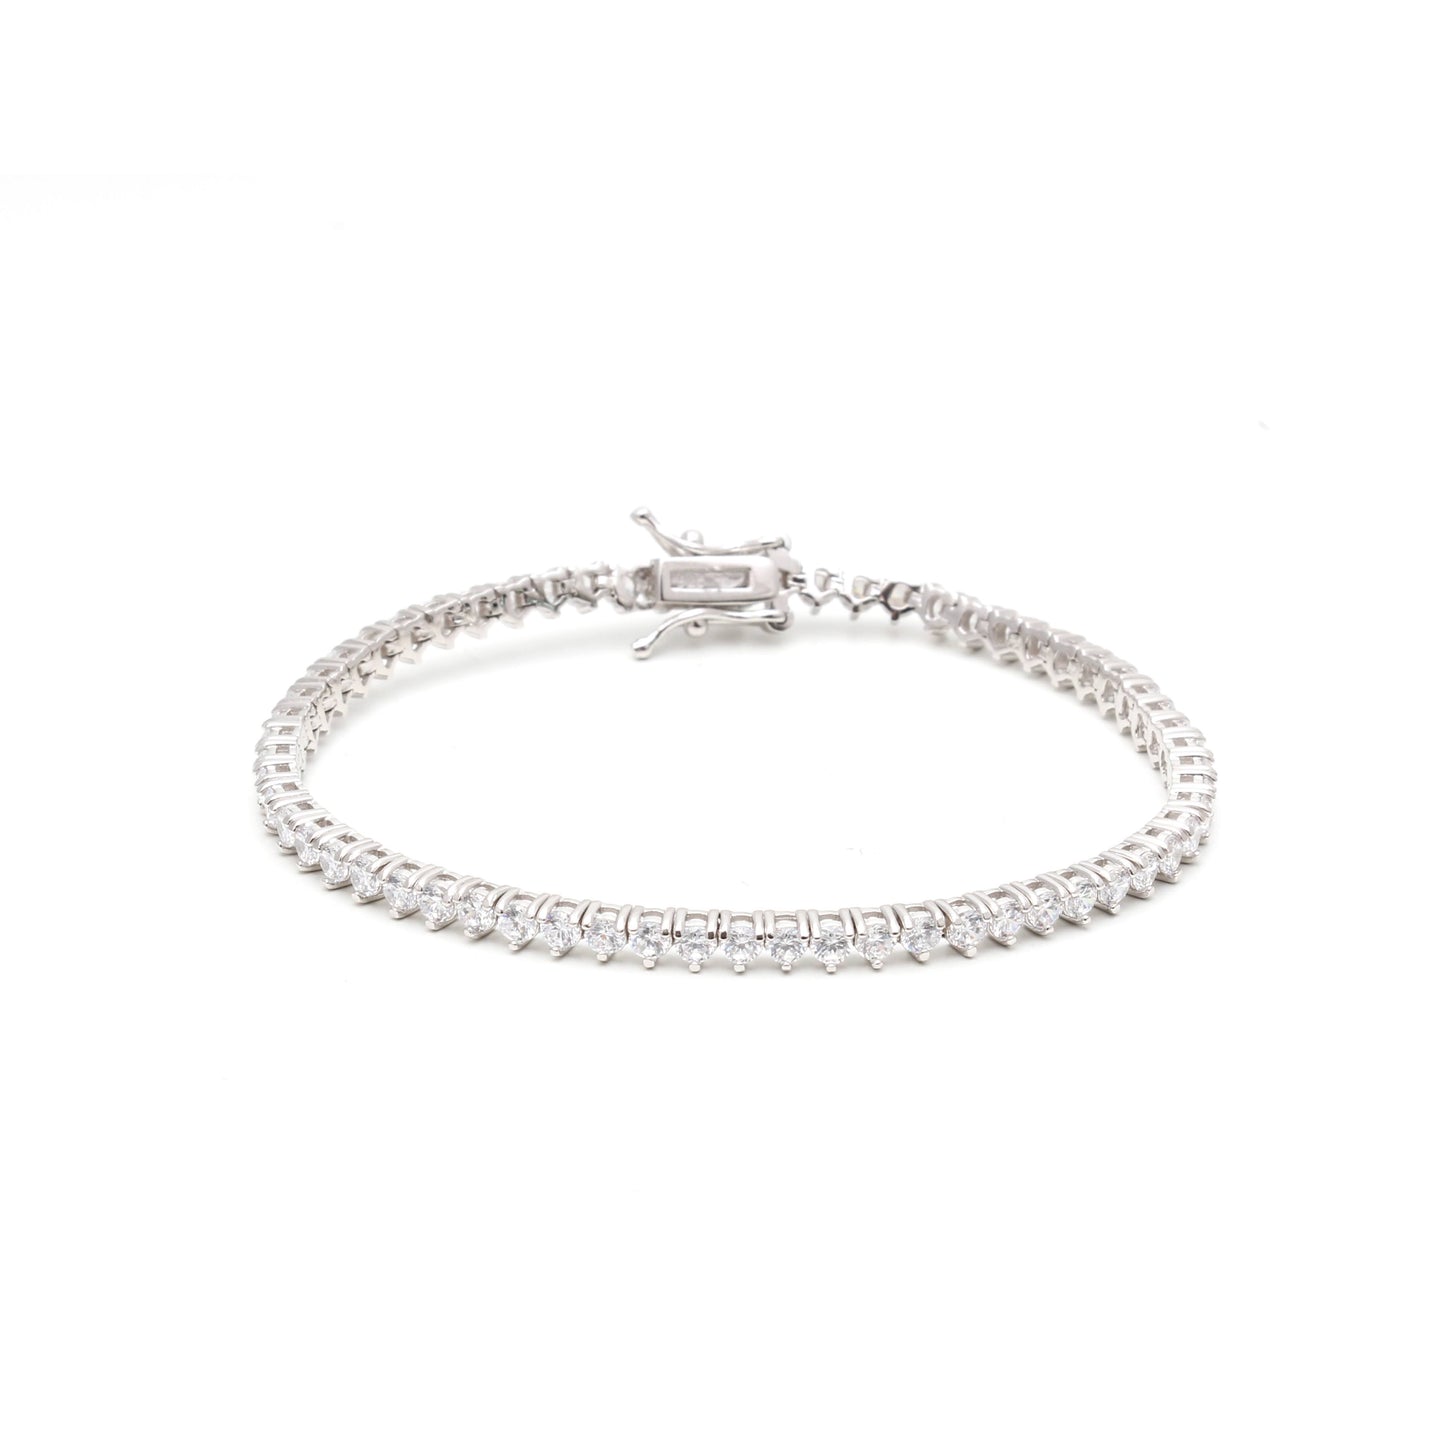 Tennis bracelet - silver color